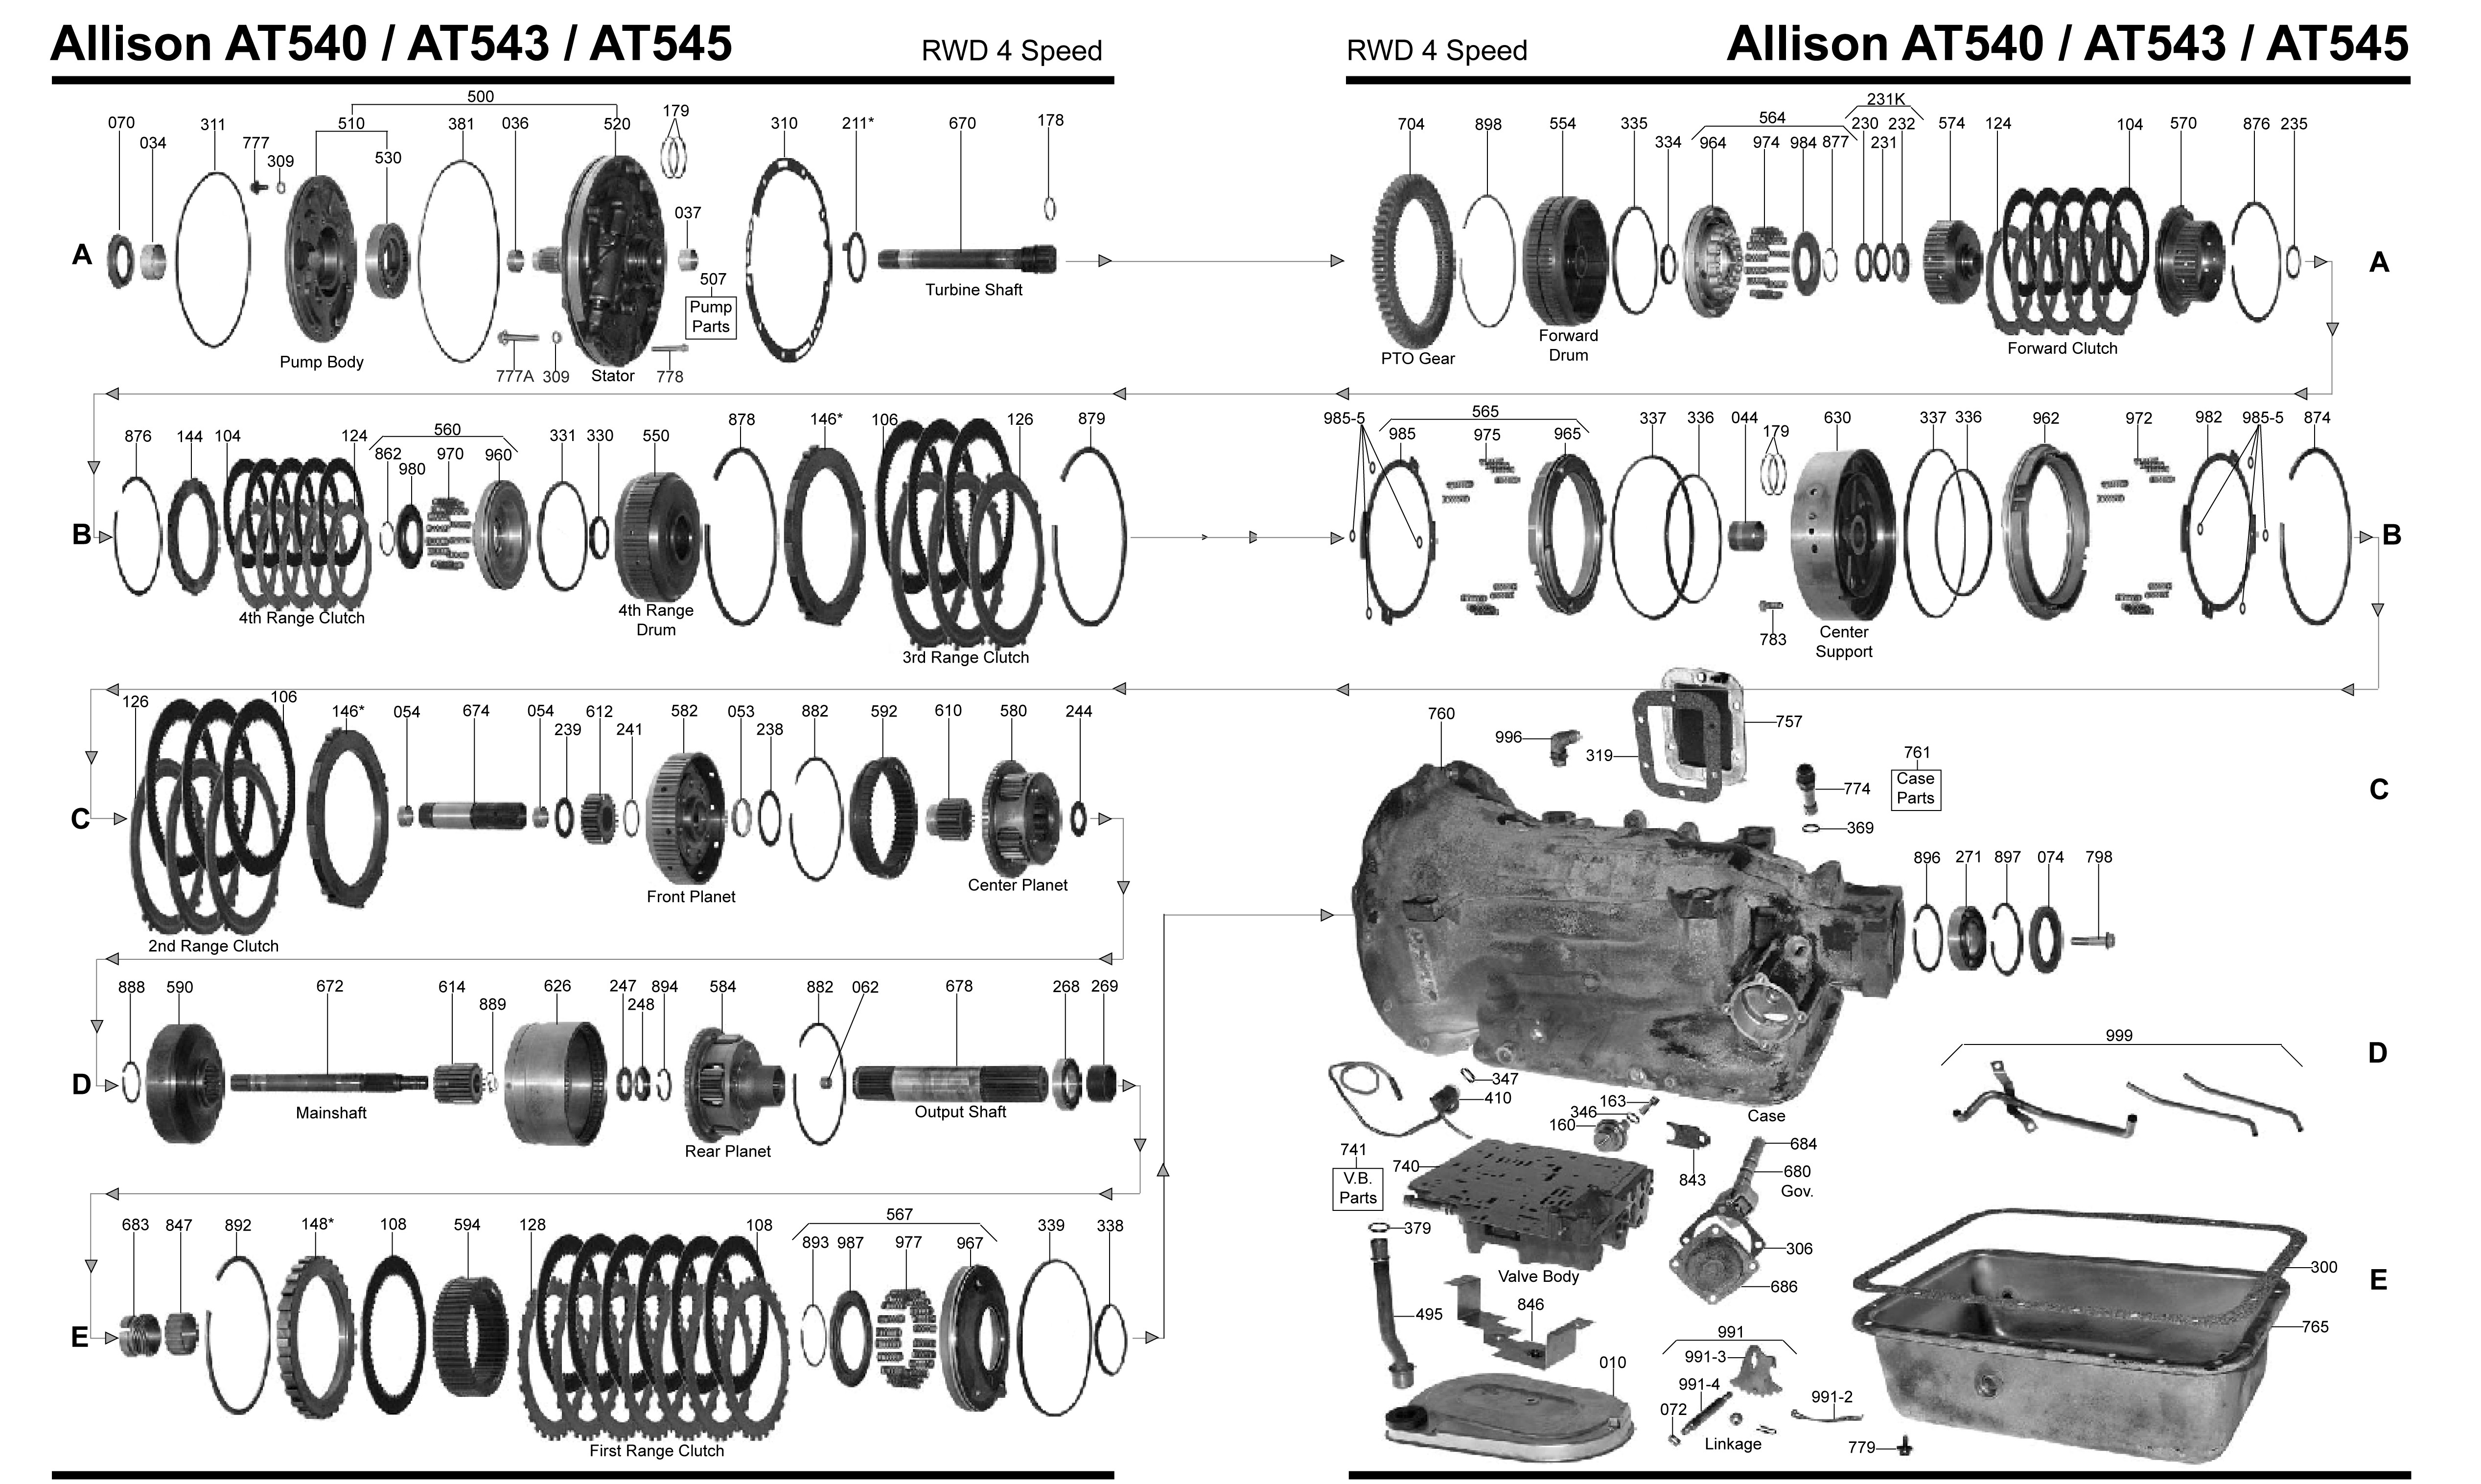 Chevy S10 Parts Diagram 4l60e Parts Diagram Wiring Diagram Of Chevy S10 Parts Diagram